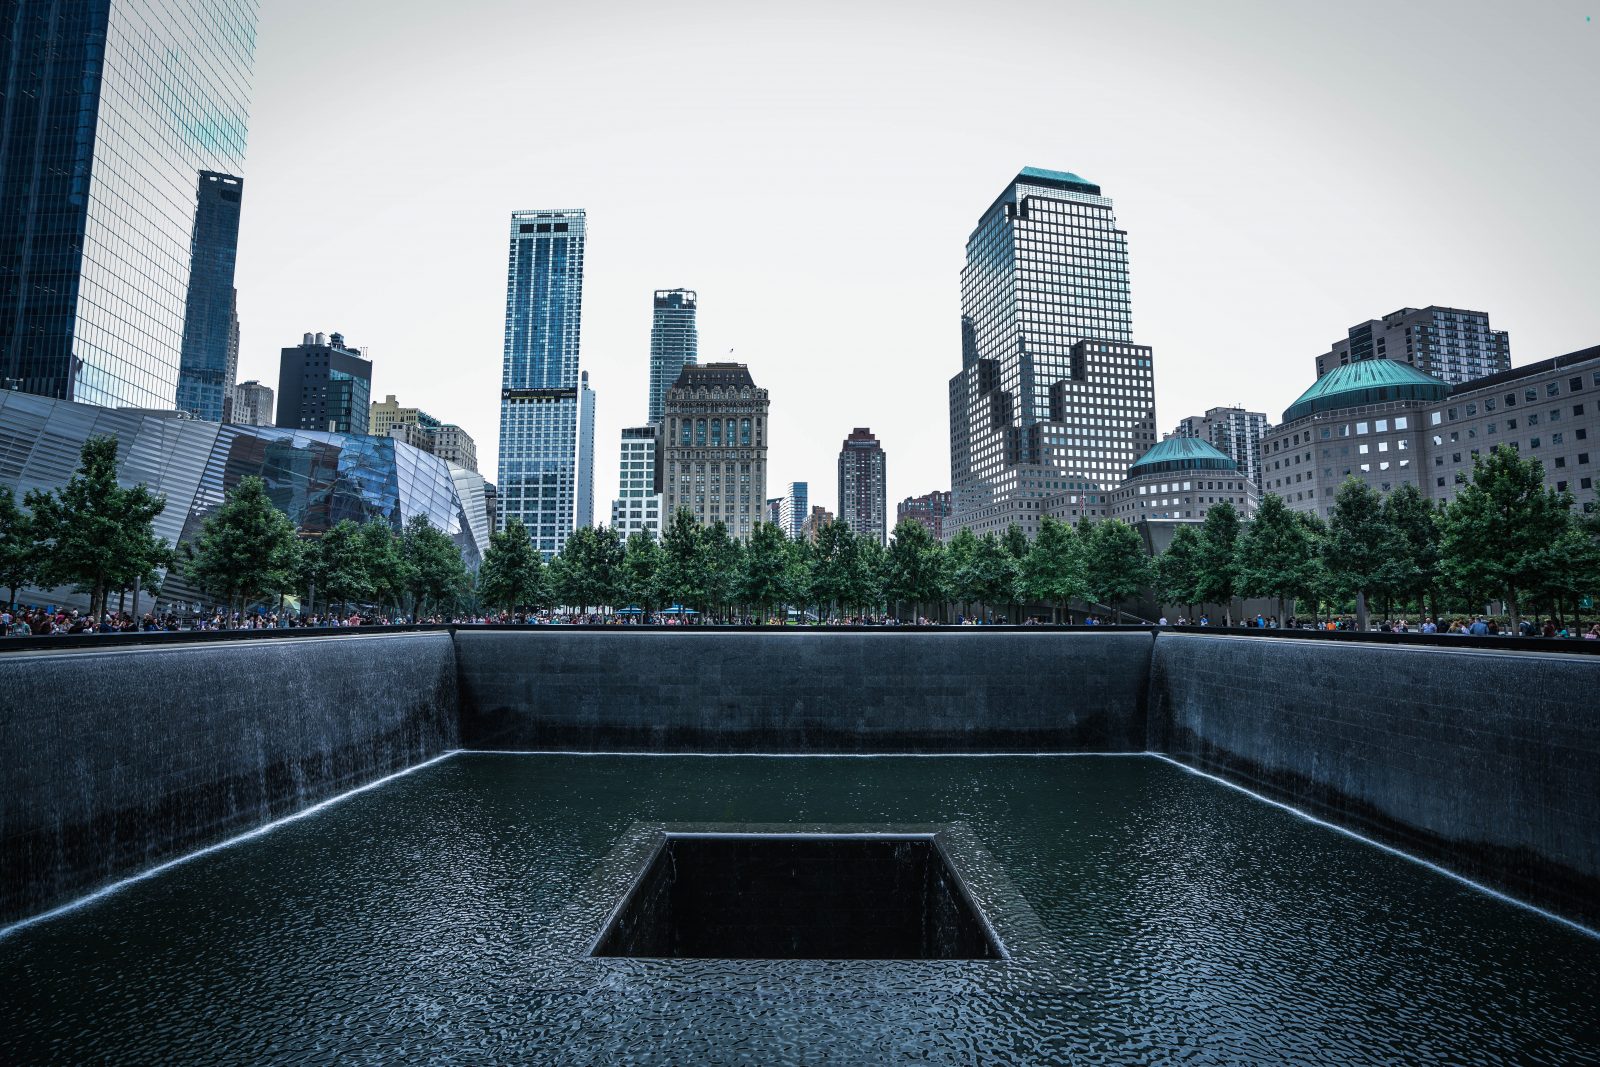 9/11 Memorial and Museum